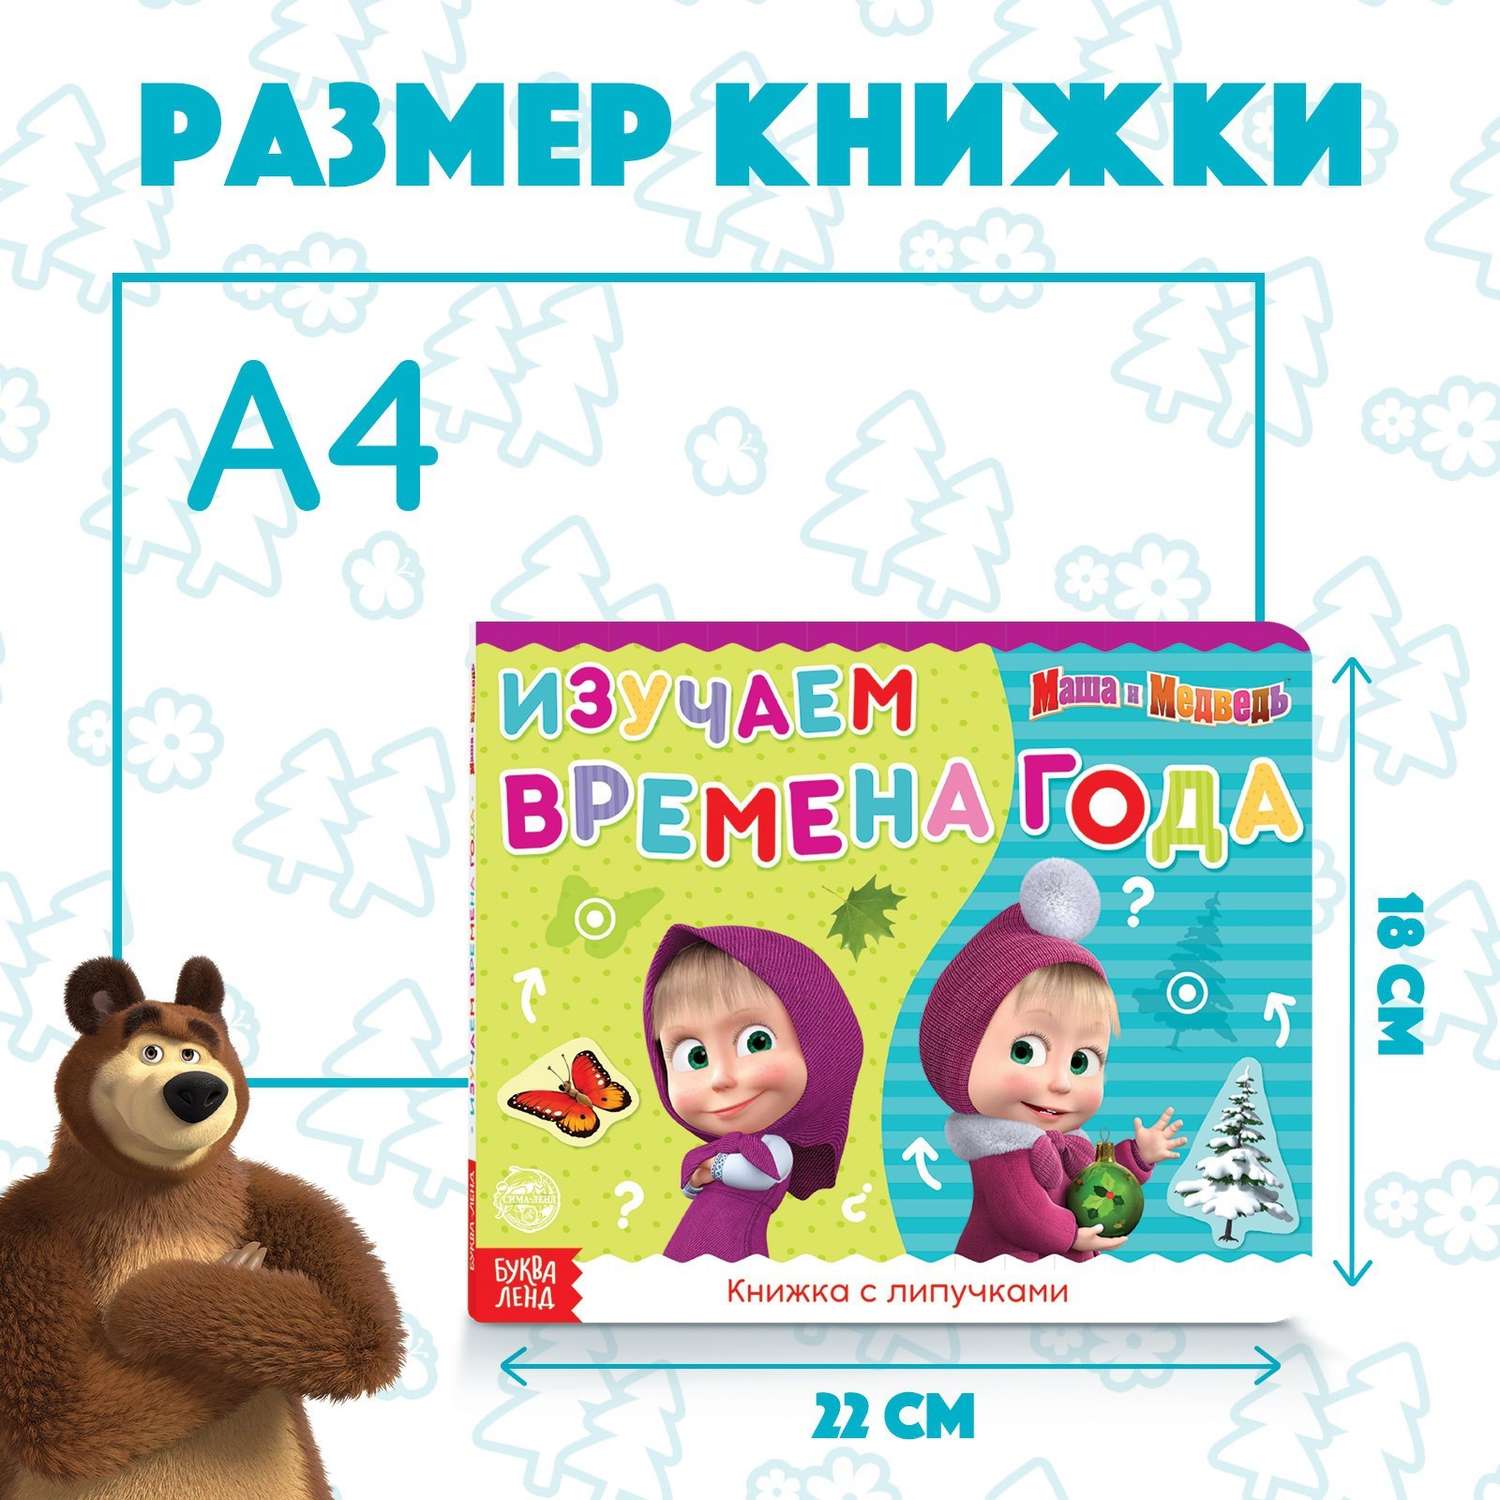 Книжка Маша и медведь с липучками - фото 2